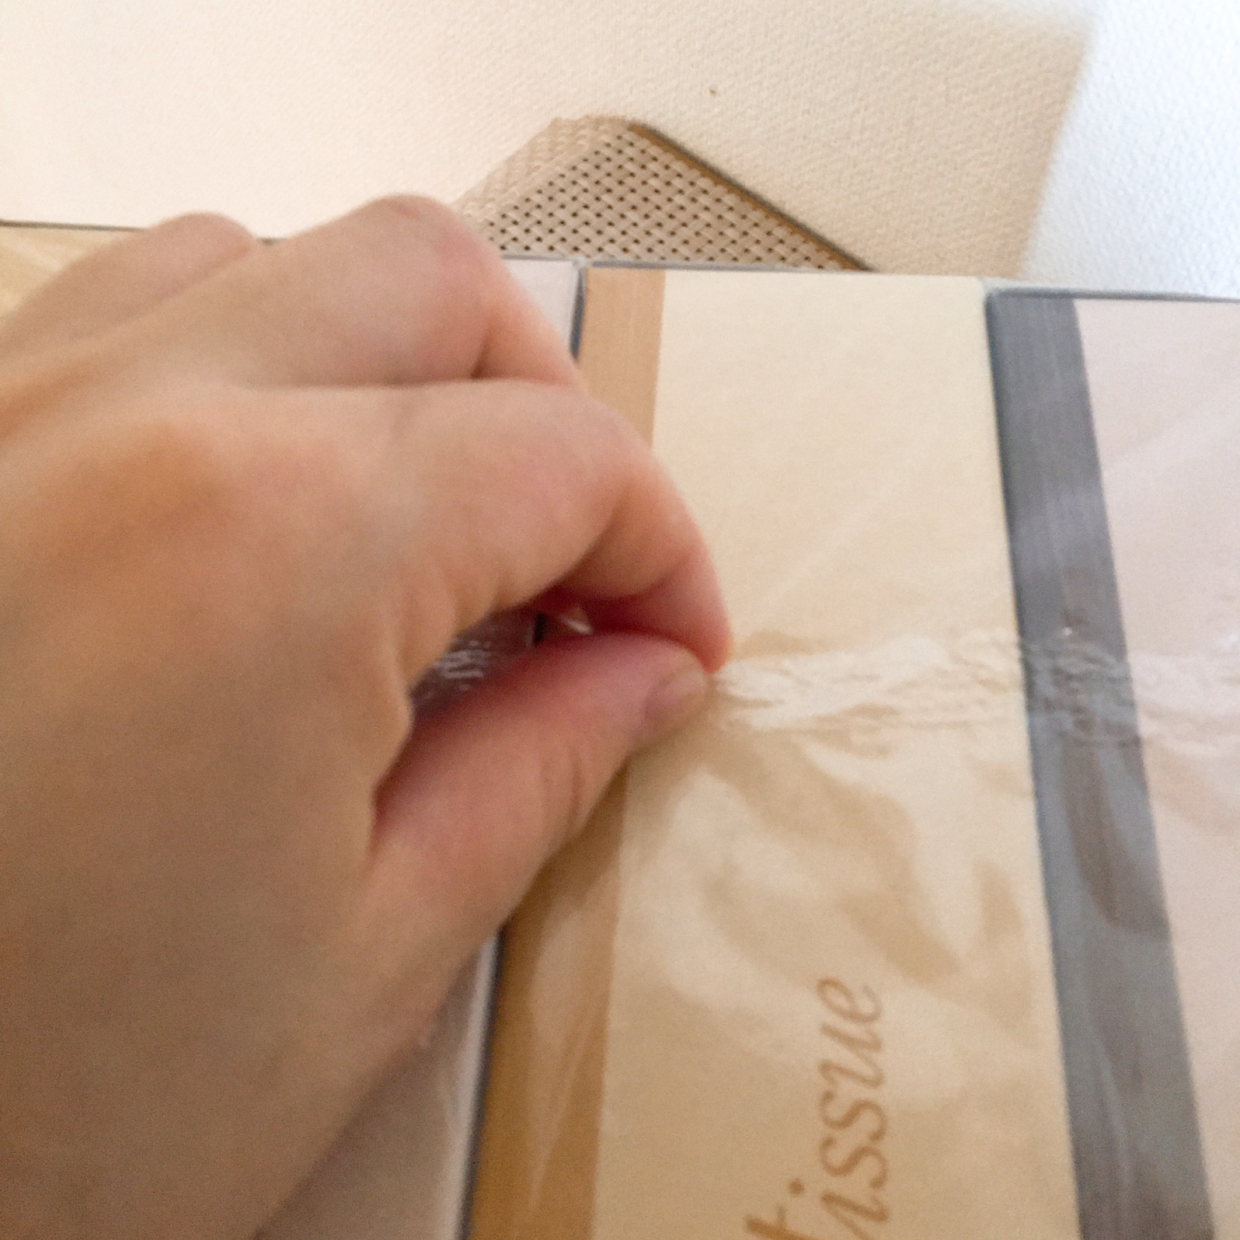  「箱ティッシュの透明な外袋」をストレスなく“簡単に開ける方法” 